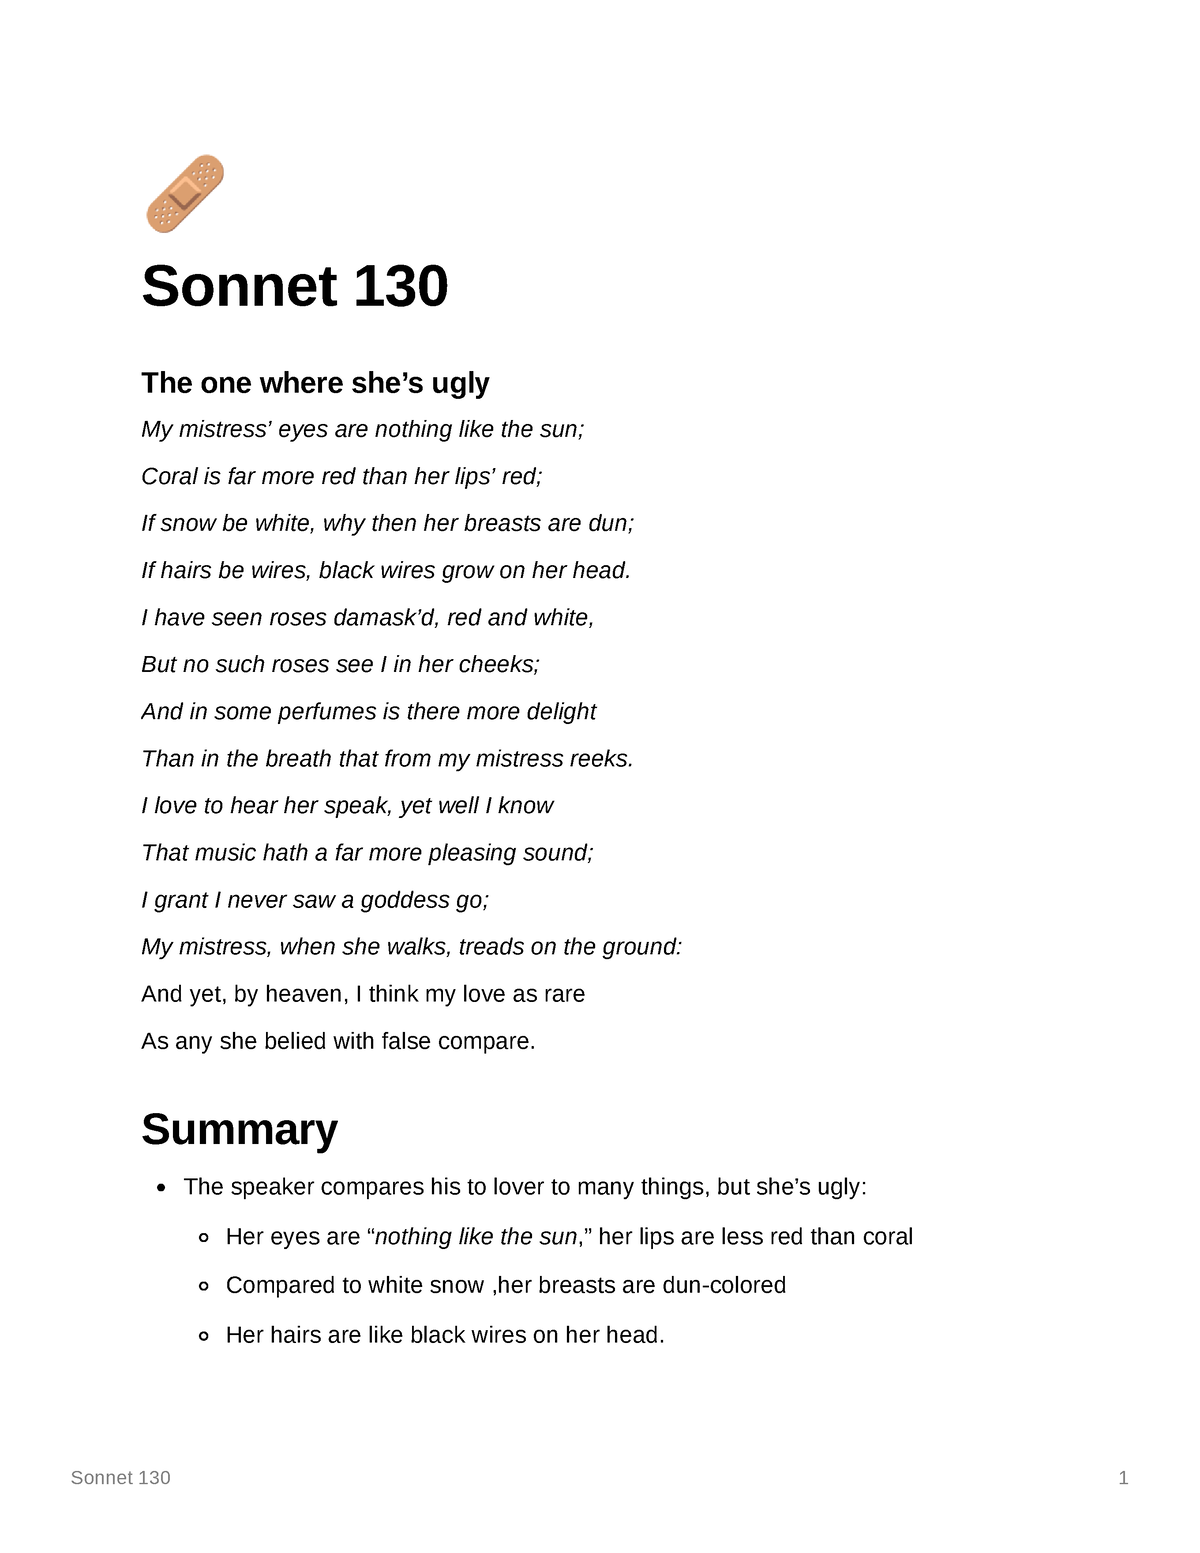 sonnet-130-william-s-sonnet-130-1-5-sonnet-130-the-one-where-she-s